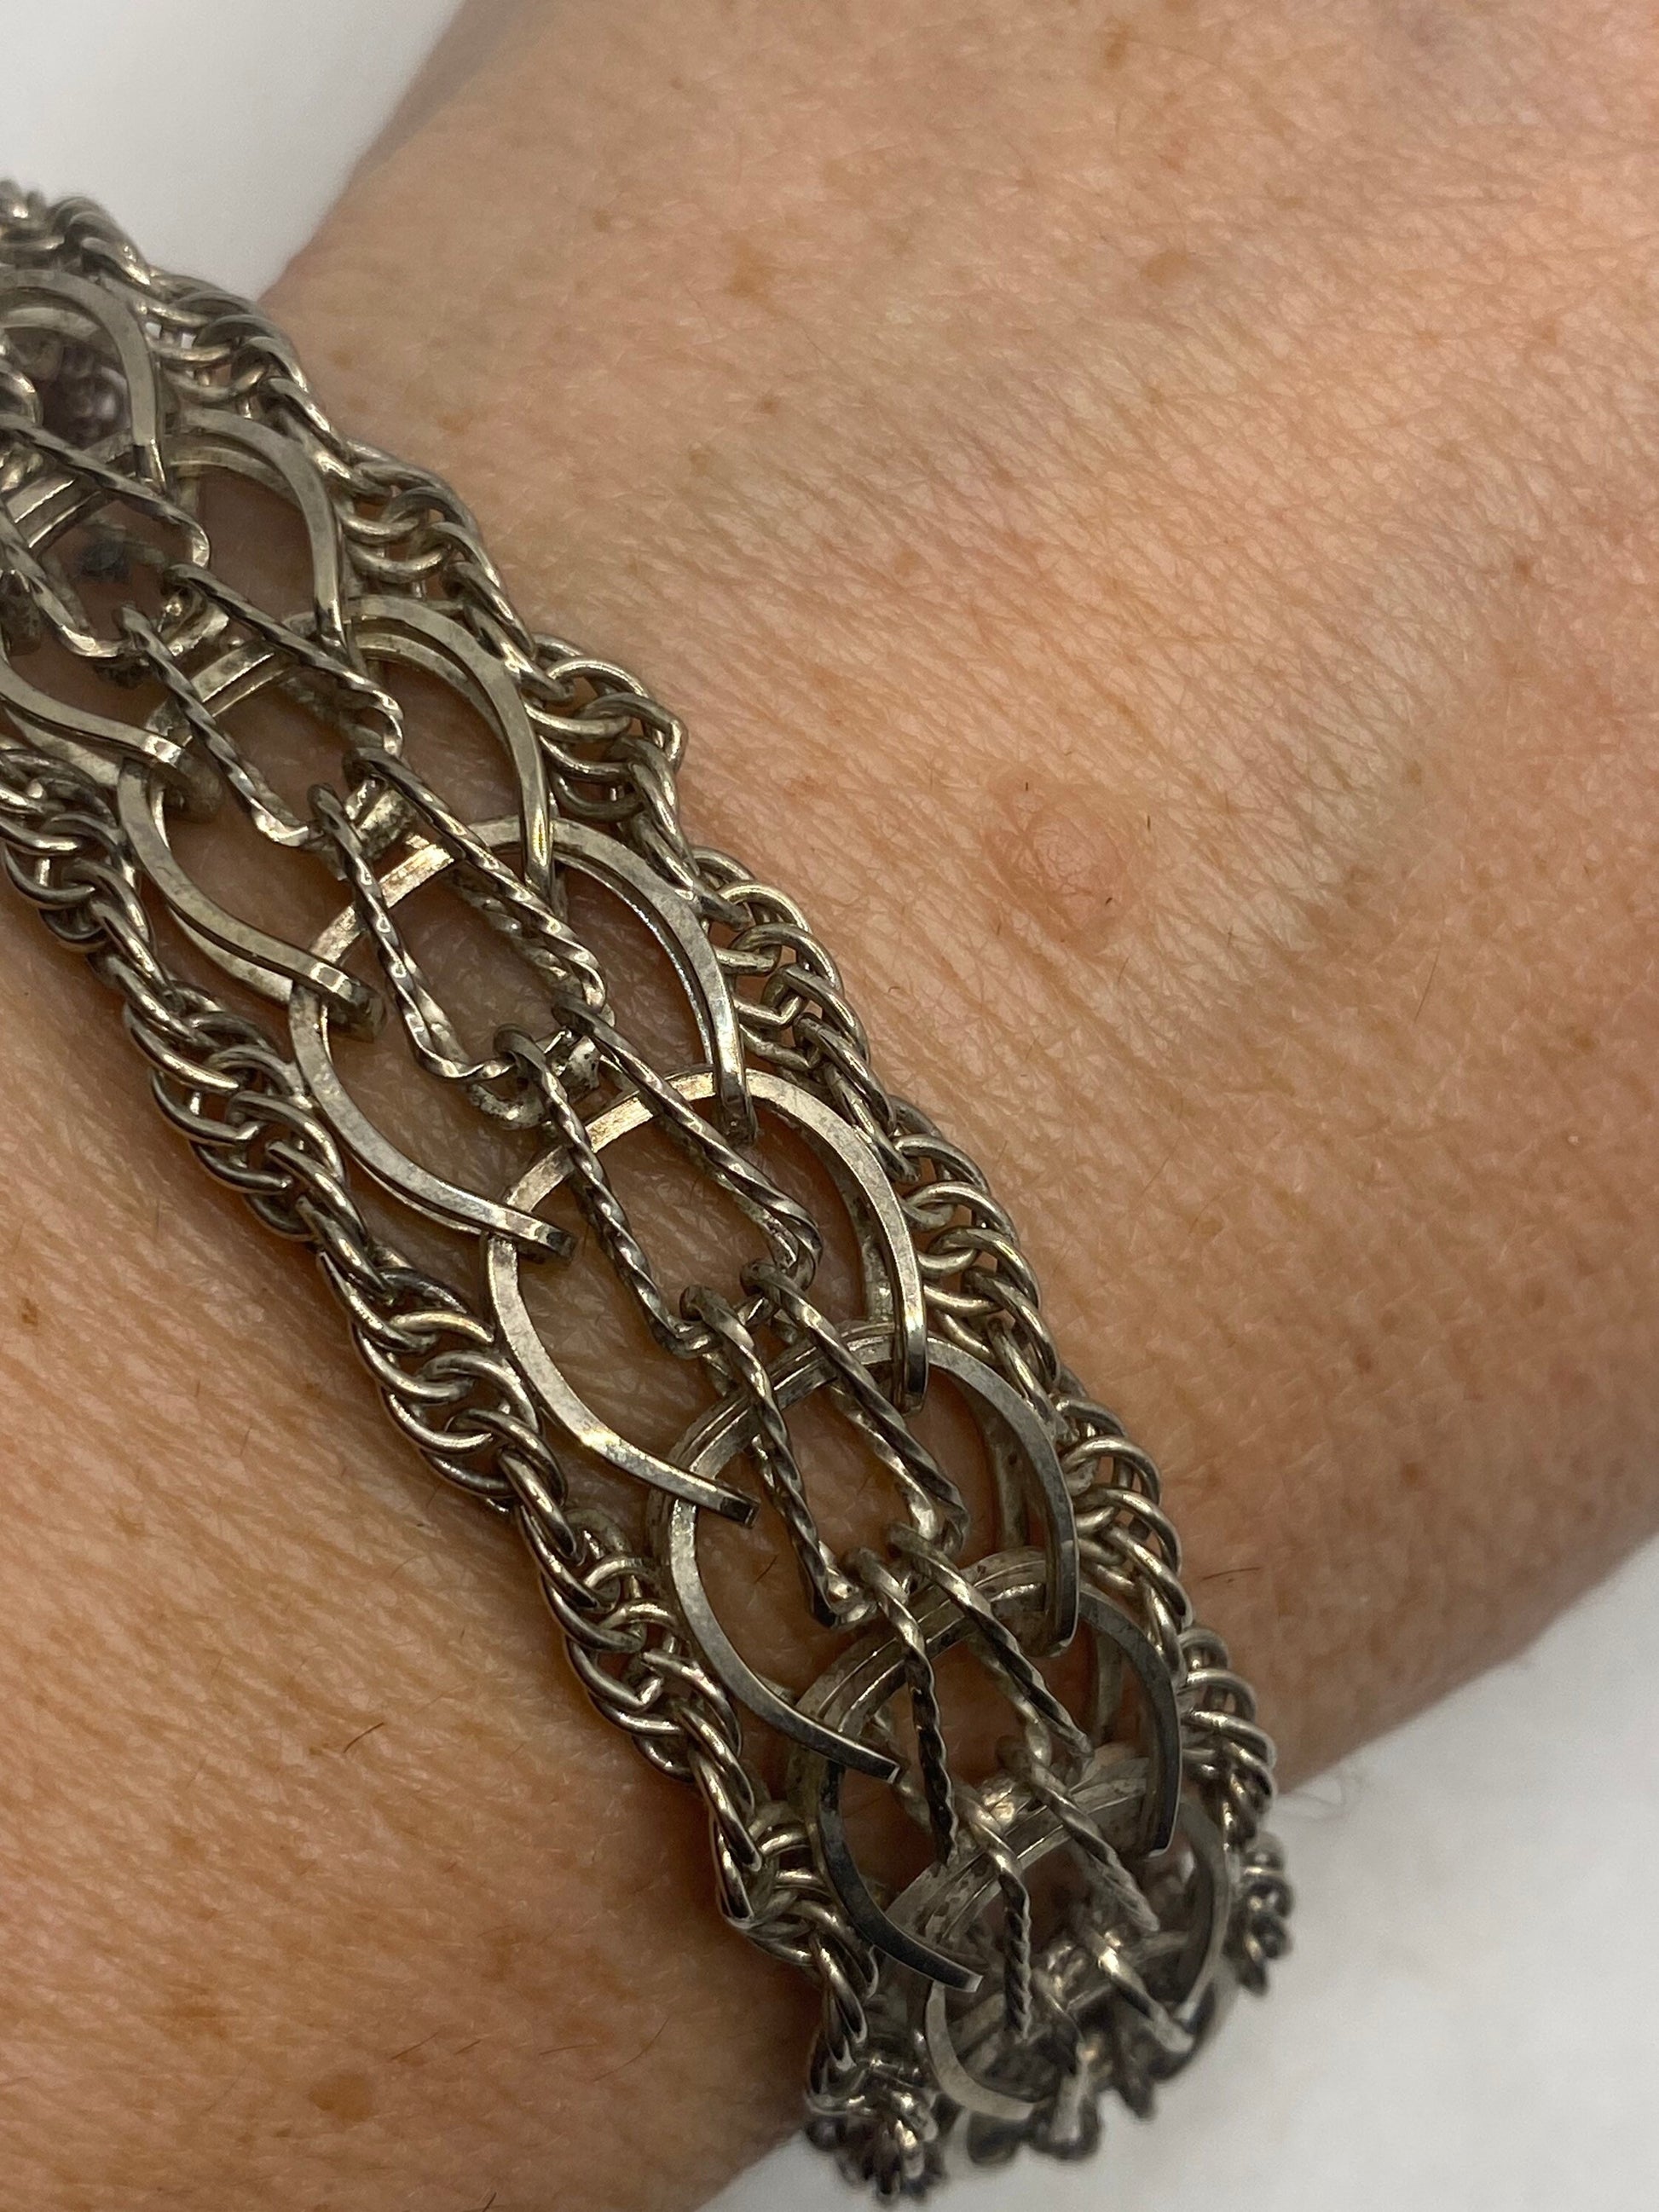 Vintage 925 Sterling Silver Chain Link Charm Bracelet